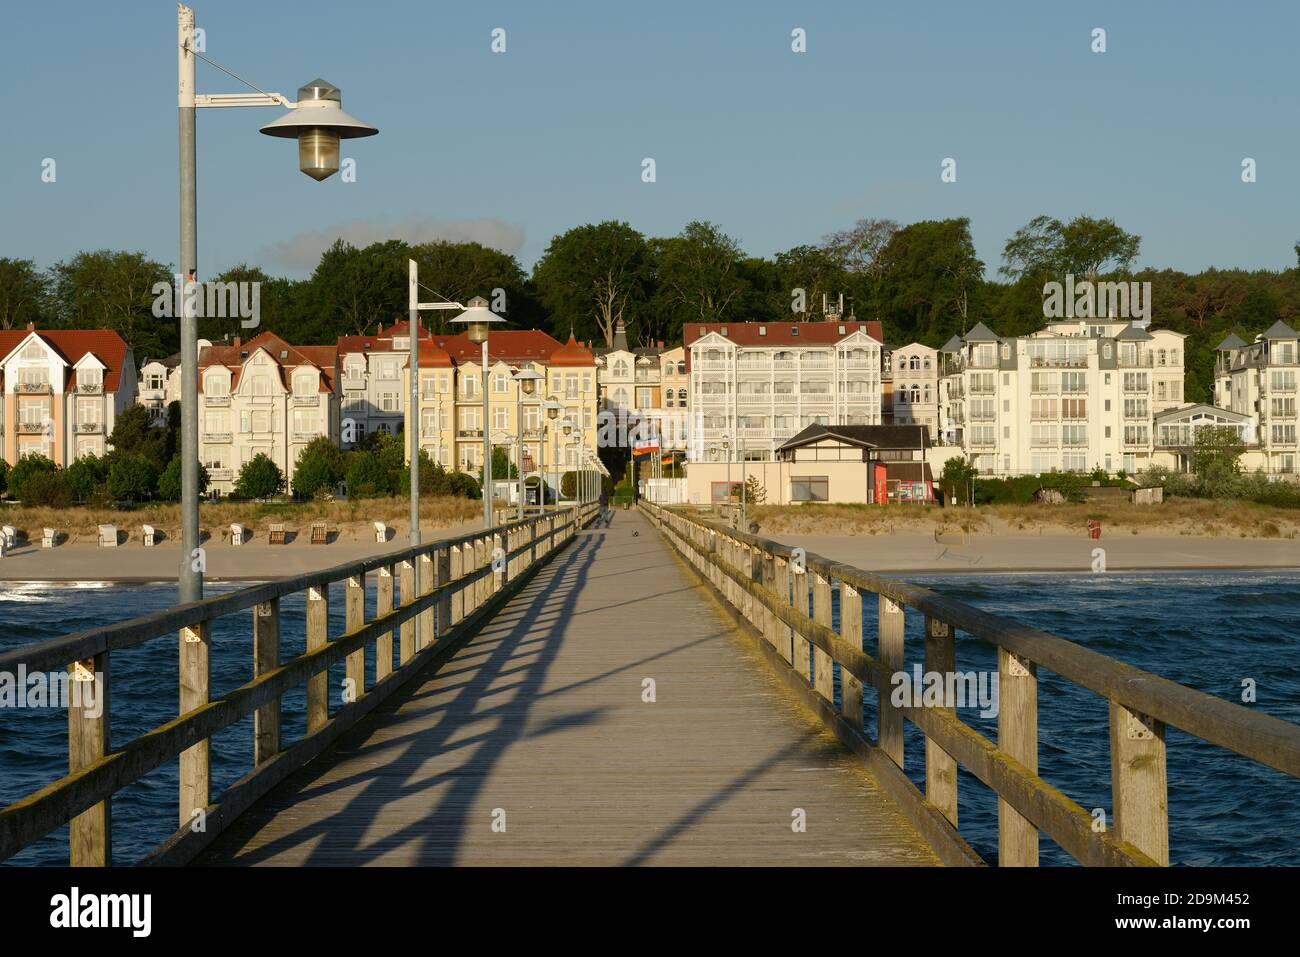 Blick vom Pier auf Häuser und Villen an der Strandpromenade von Bansin im Morgenlicht, Badeort Bansin, Usedom, Ostsee, Mecklenburg-Vorpommern, Deutschland Stockfoto